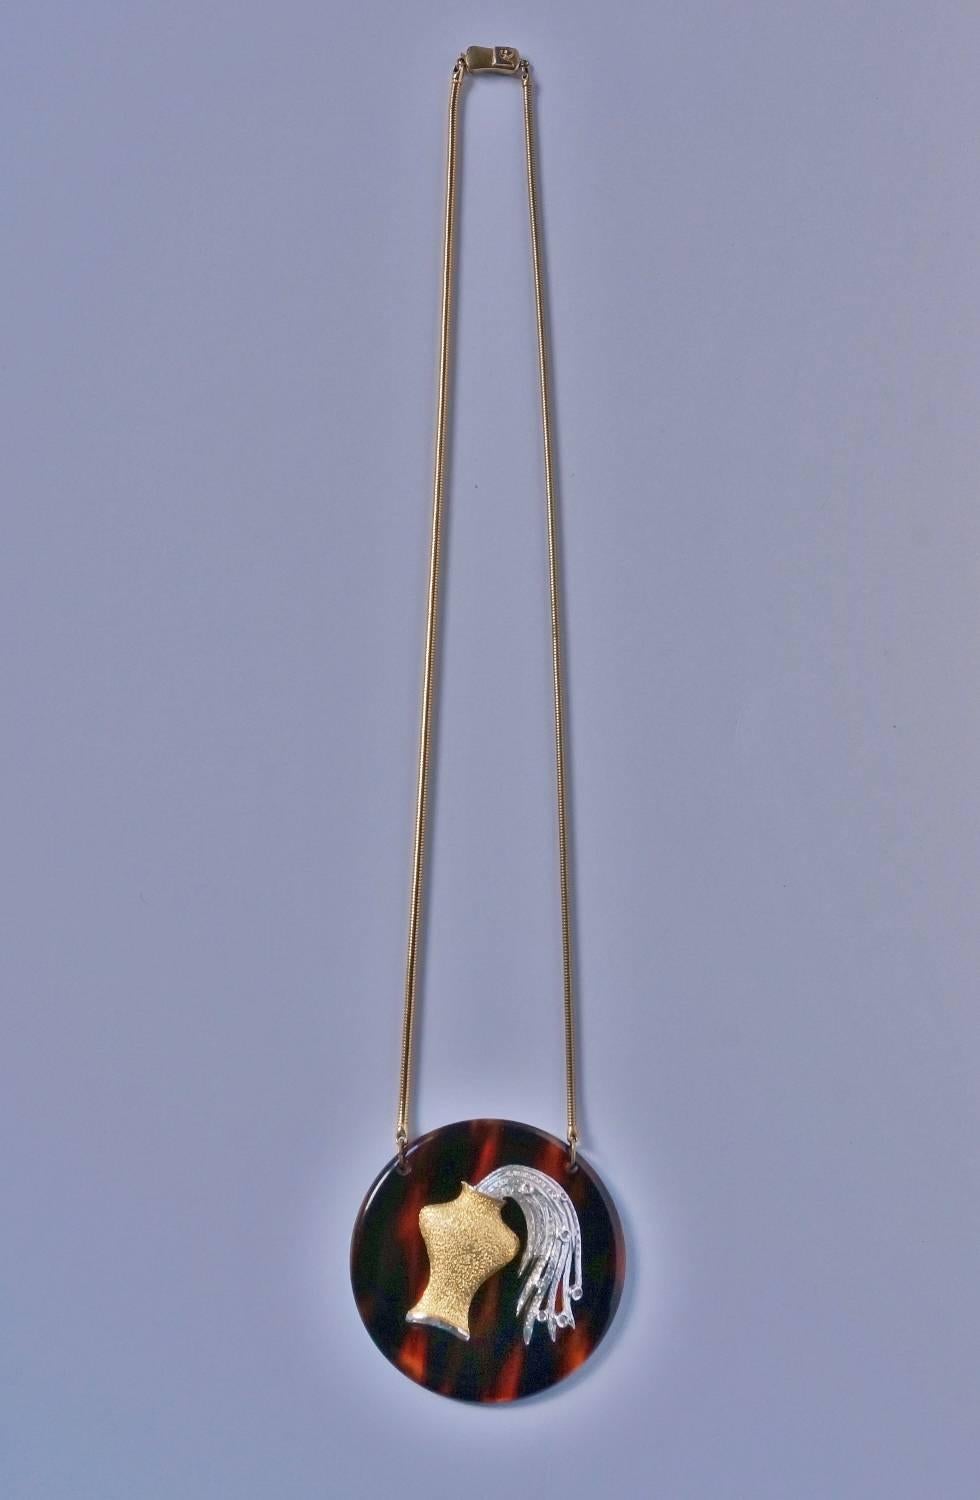 Pierre Cardin Necklace Large Aquarius Pendant, Original Box, 1960s, Italian 1